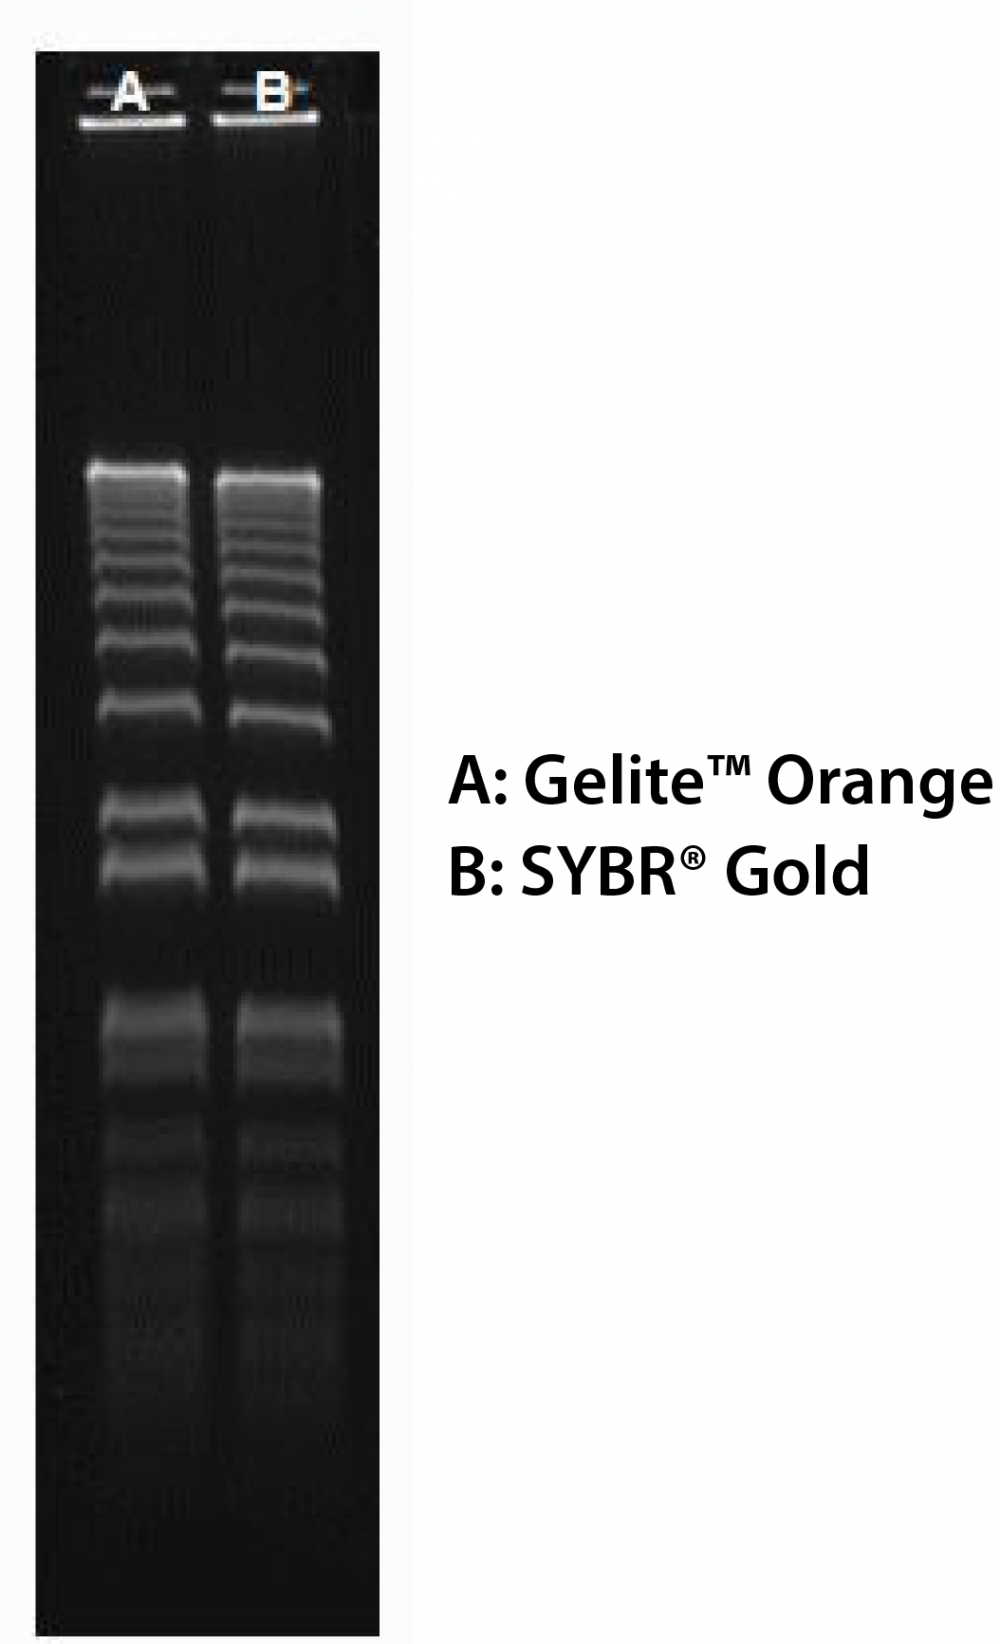 Gelite 橙色核酸凝胶染色试剂盒     货号17594